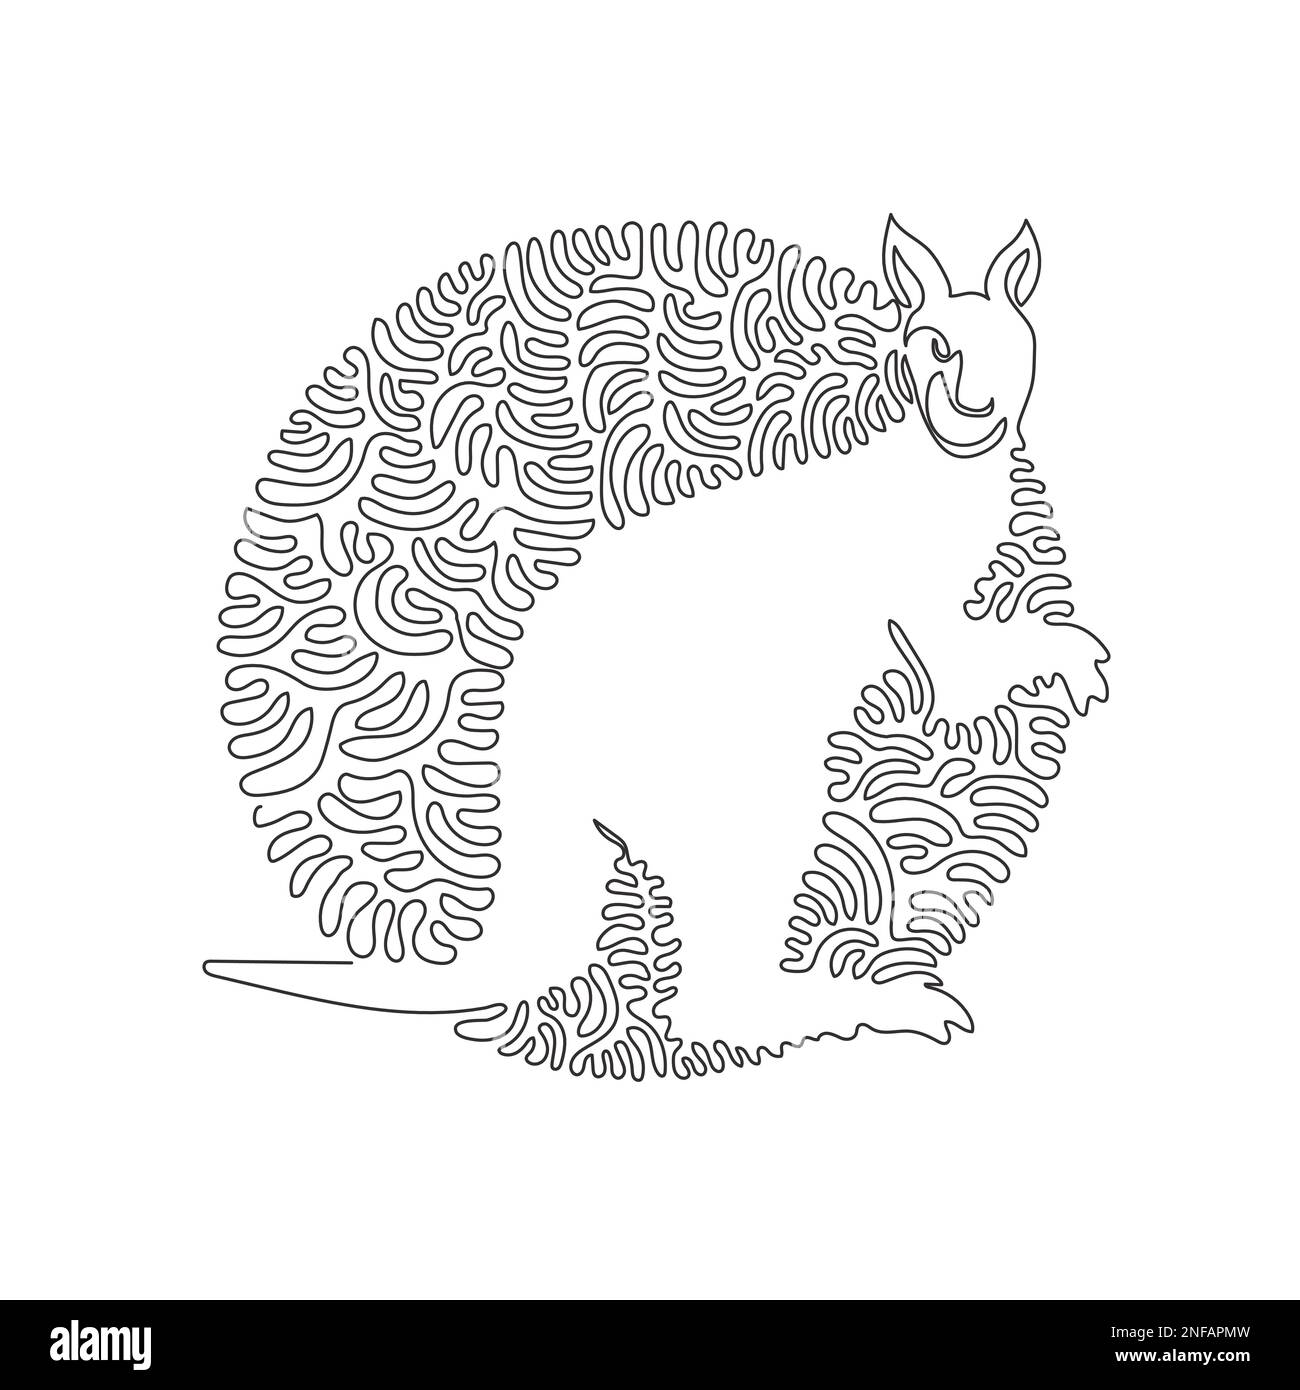 Un seul motif en forme de kangourou. Ligne continue dessin graphique dessin illustration vectorielle de puissantes pattes arrière de kangourou Illustration de Vecteur